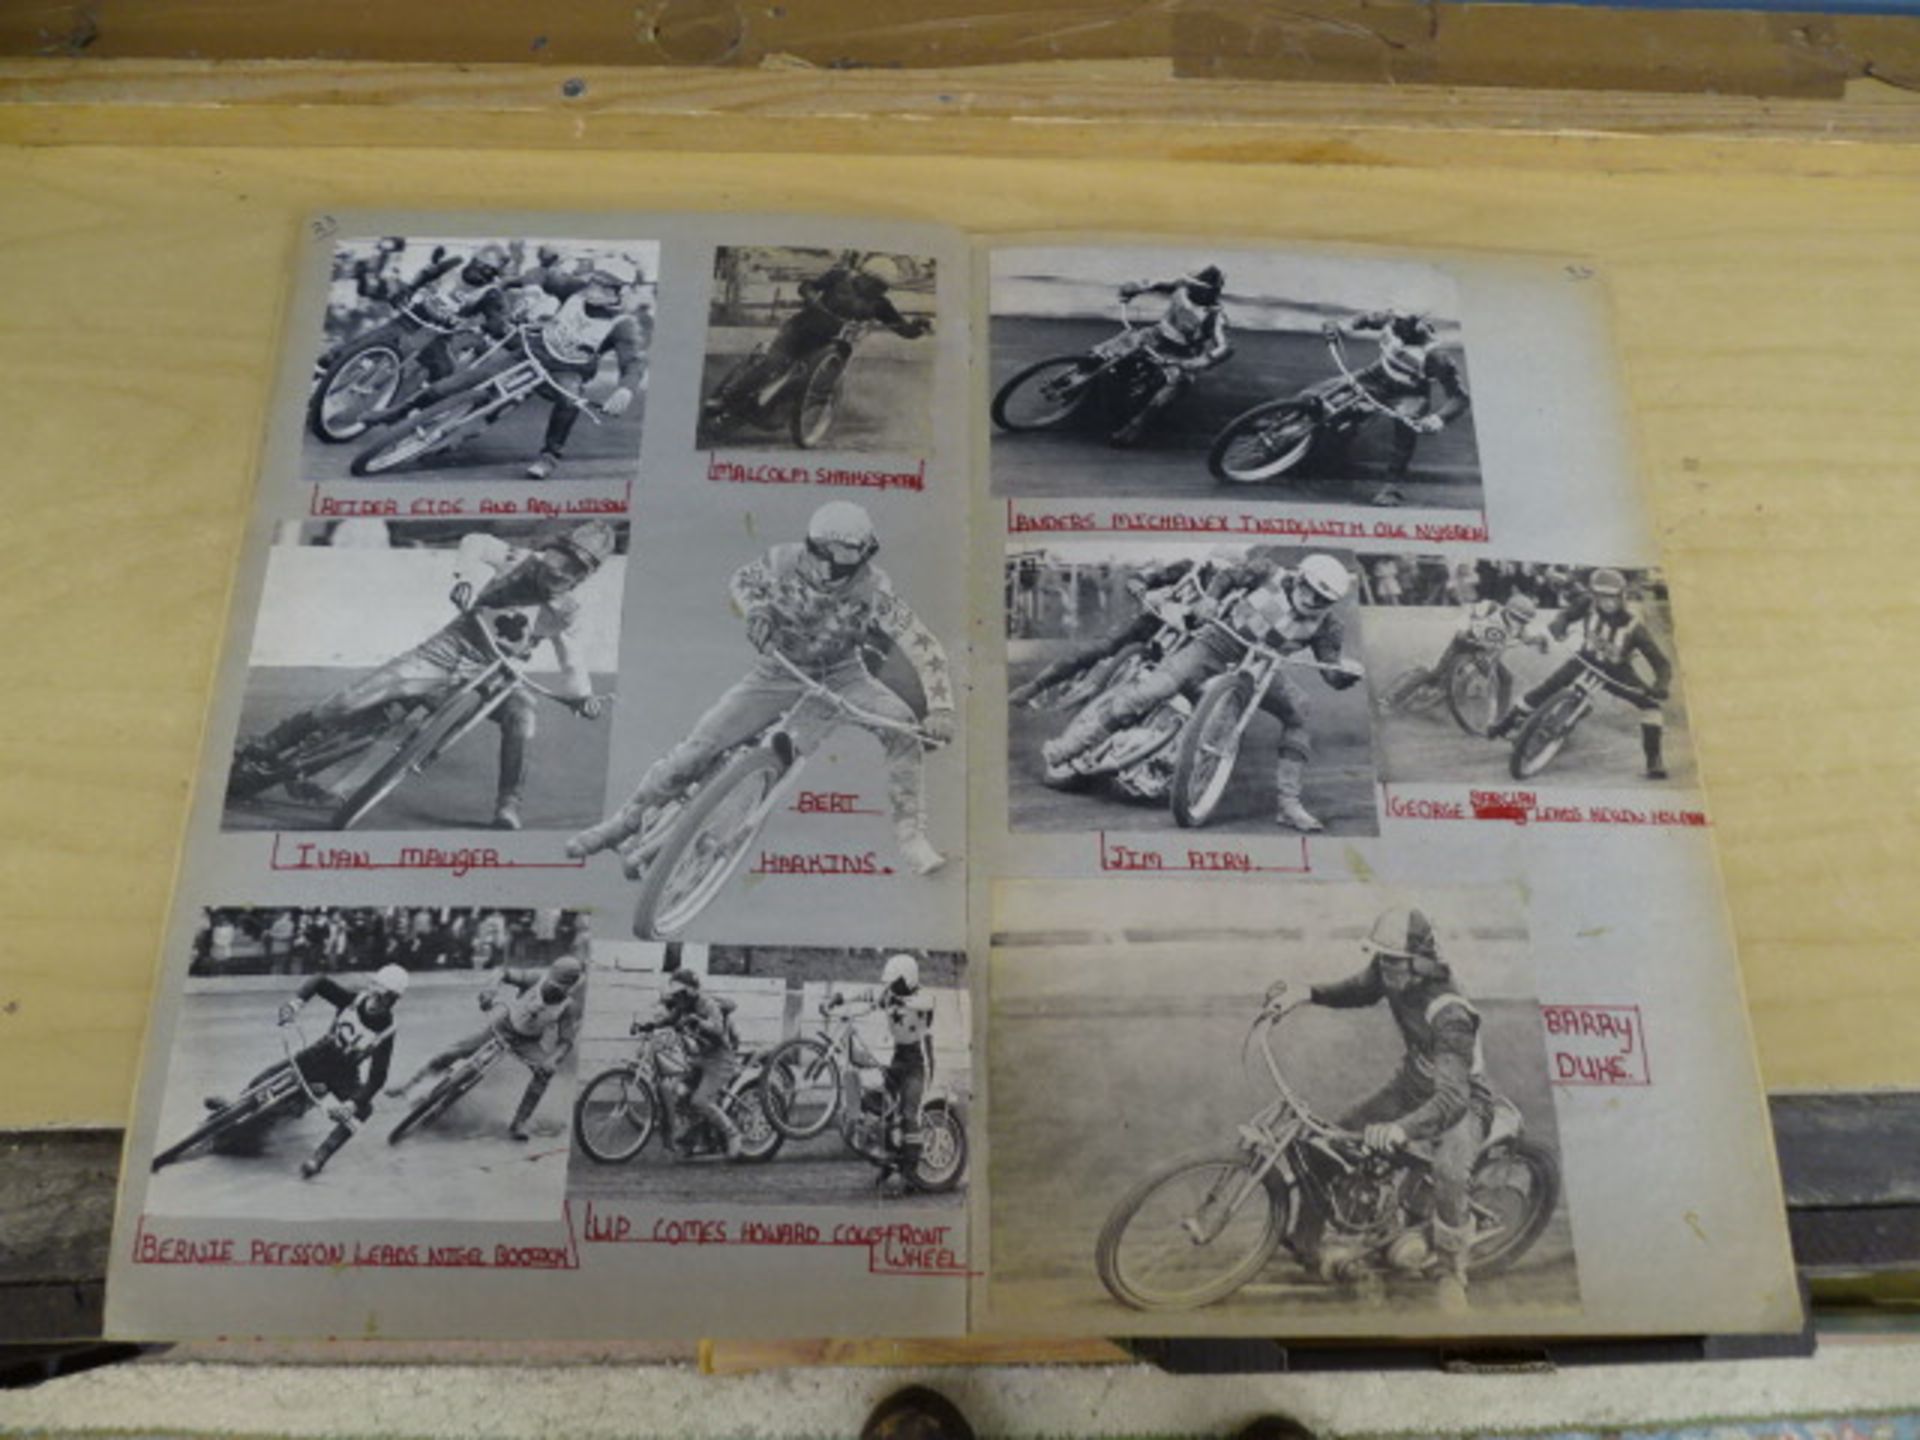 1971 Speedway scrapbook - Image 14 of 21